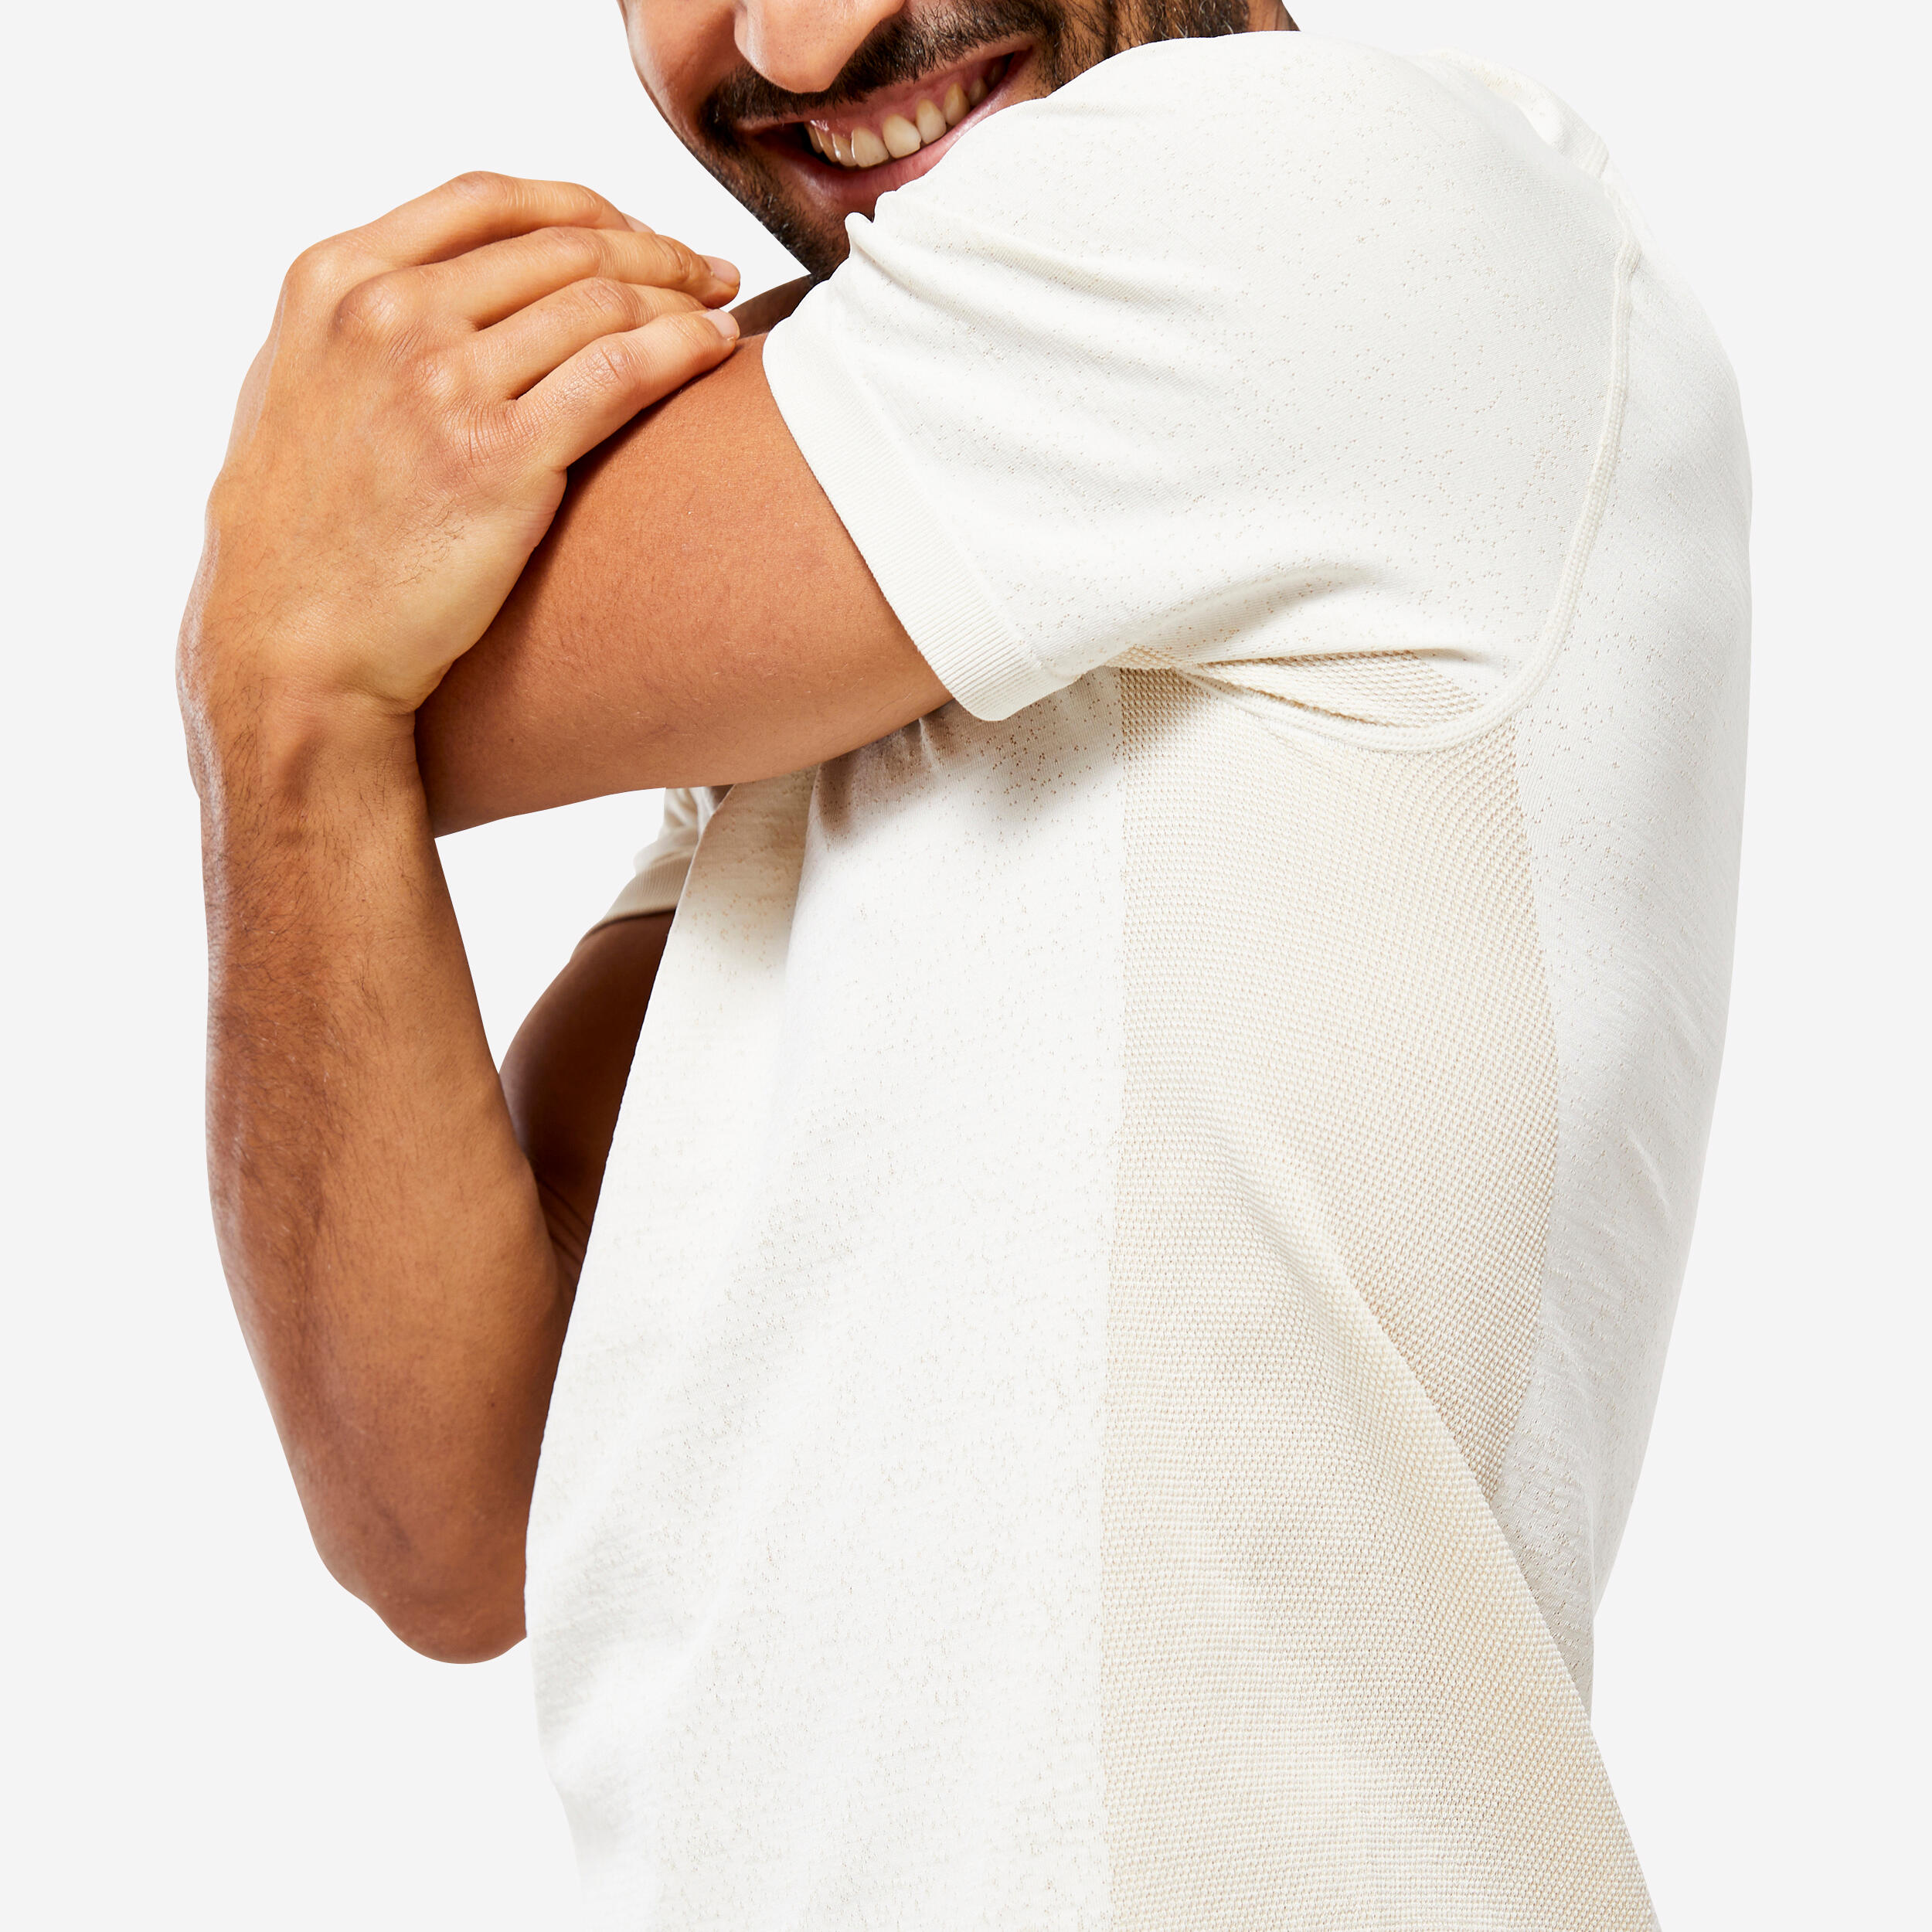 Men's Seamless Short-Sleeved Dynamic Yoga T-Shirt - White KIMJALY ...